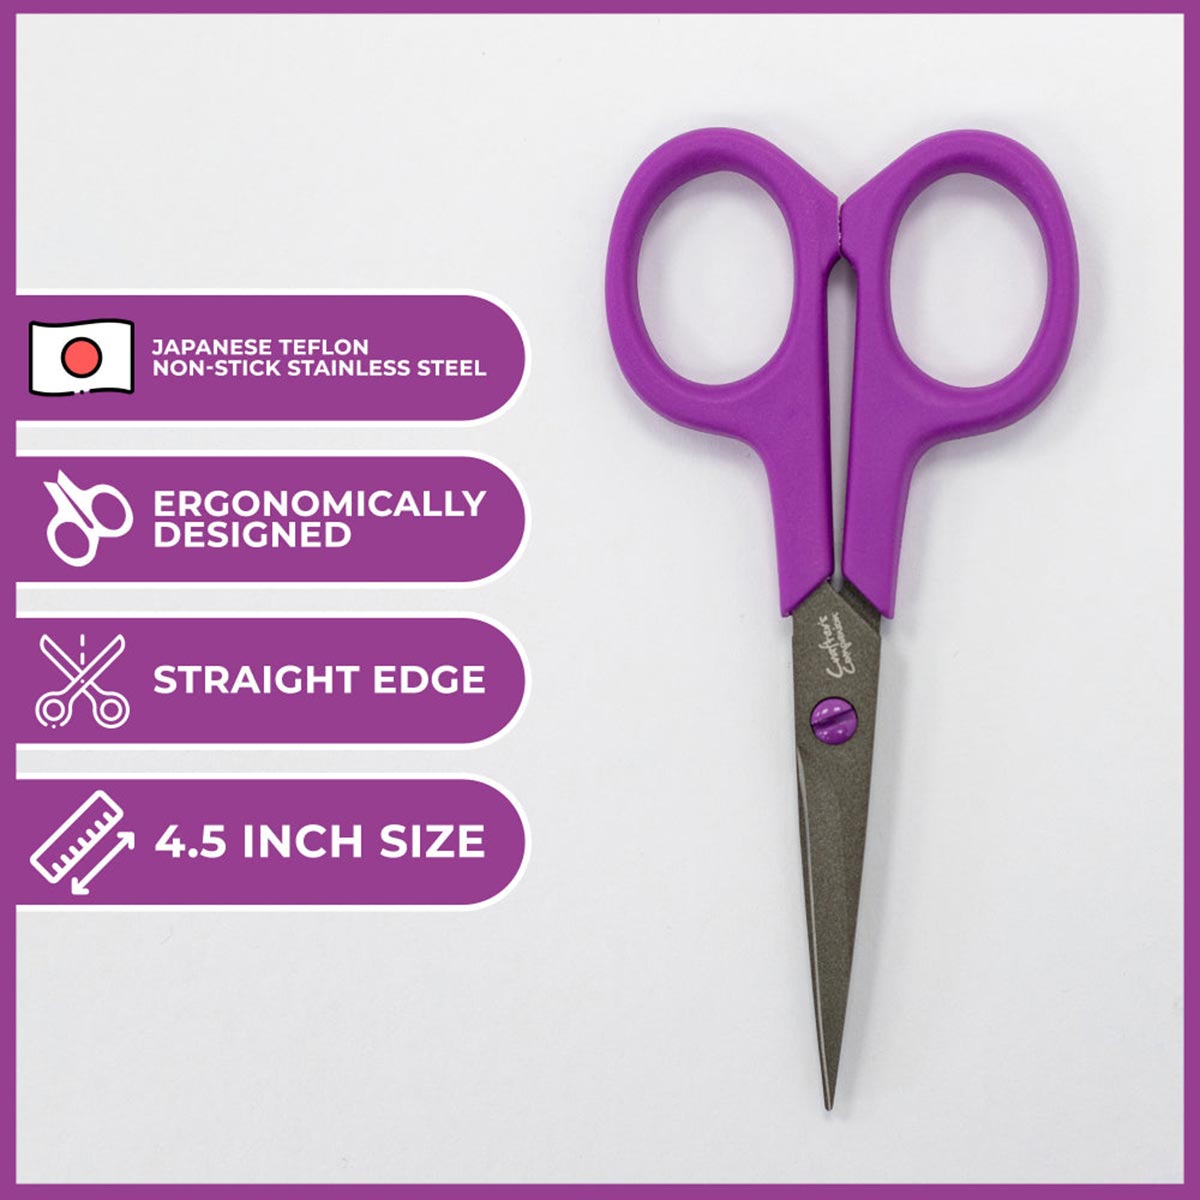 Crafter's Companion Scissors - 4.5" Precision Snips